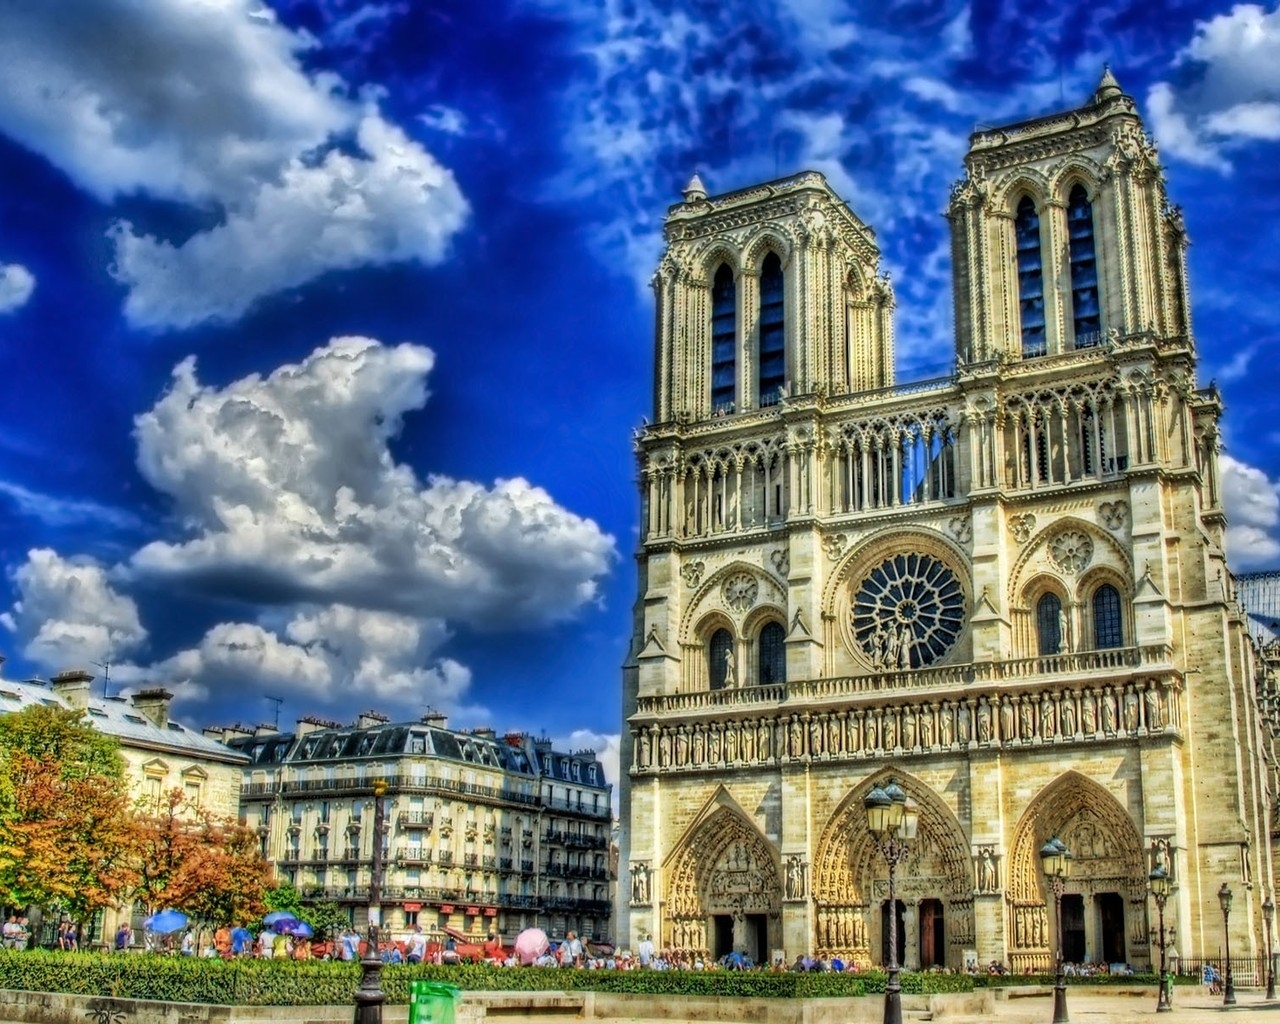 Notre Dame de Paris Cathedral for 1280 x 1024 resolution